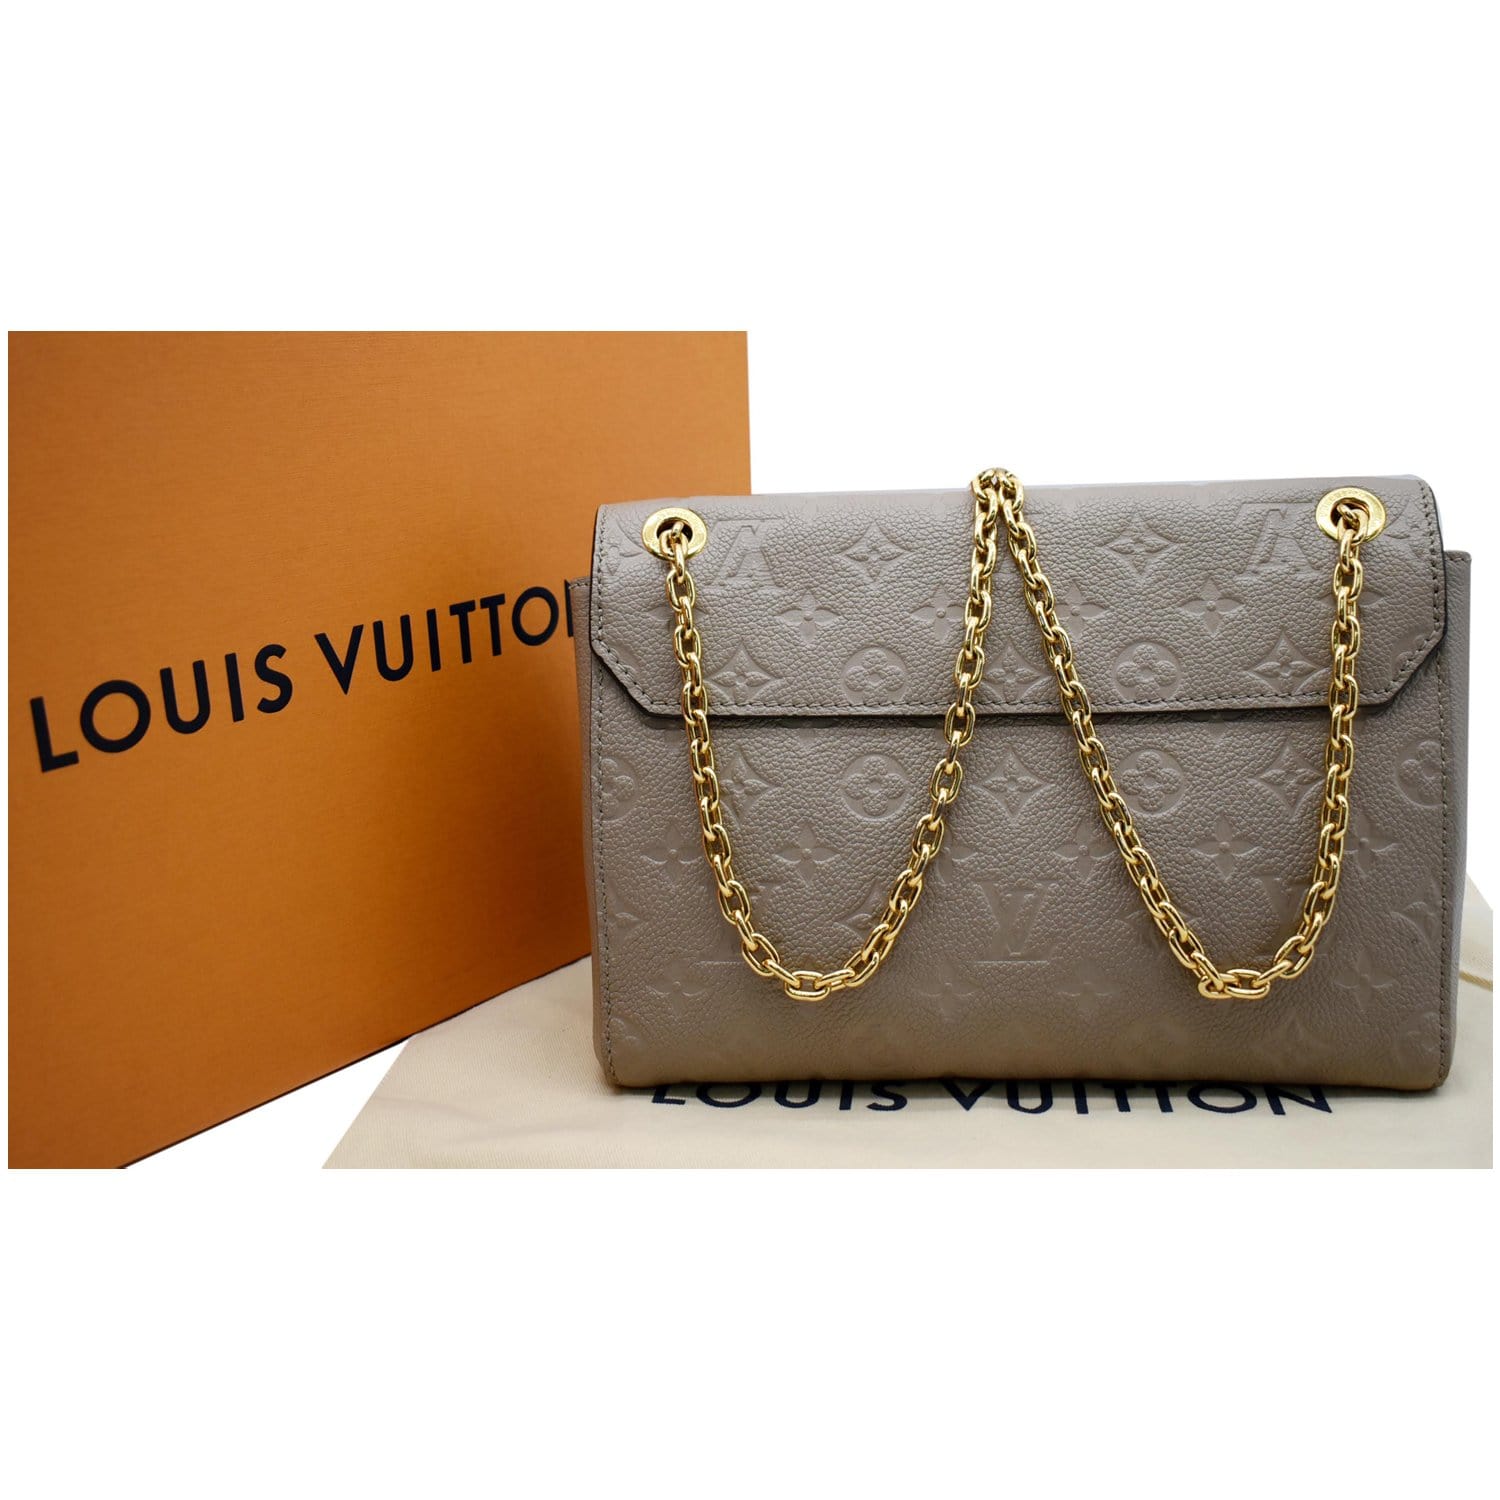 Louis Vuitton - Vavin PM - Taupe Empreinte - GHW - Pre Loved